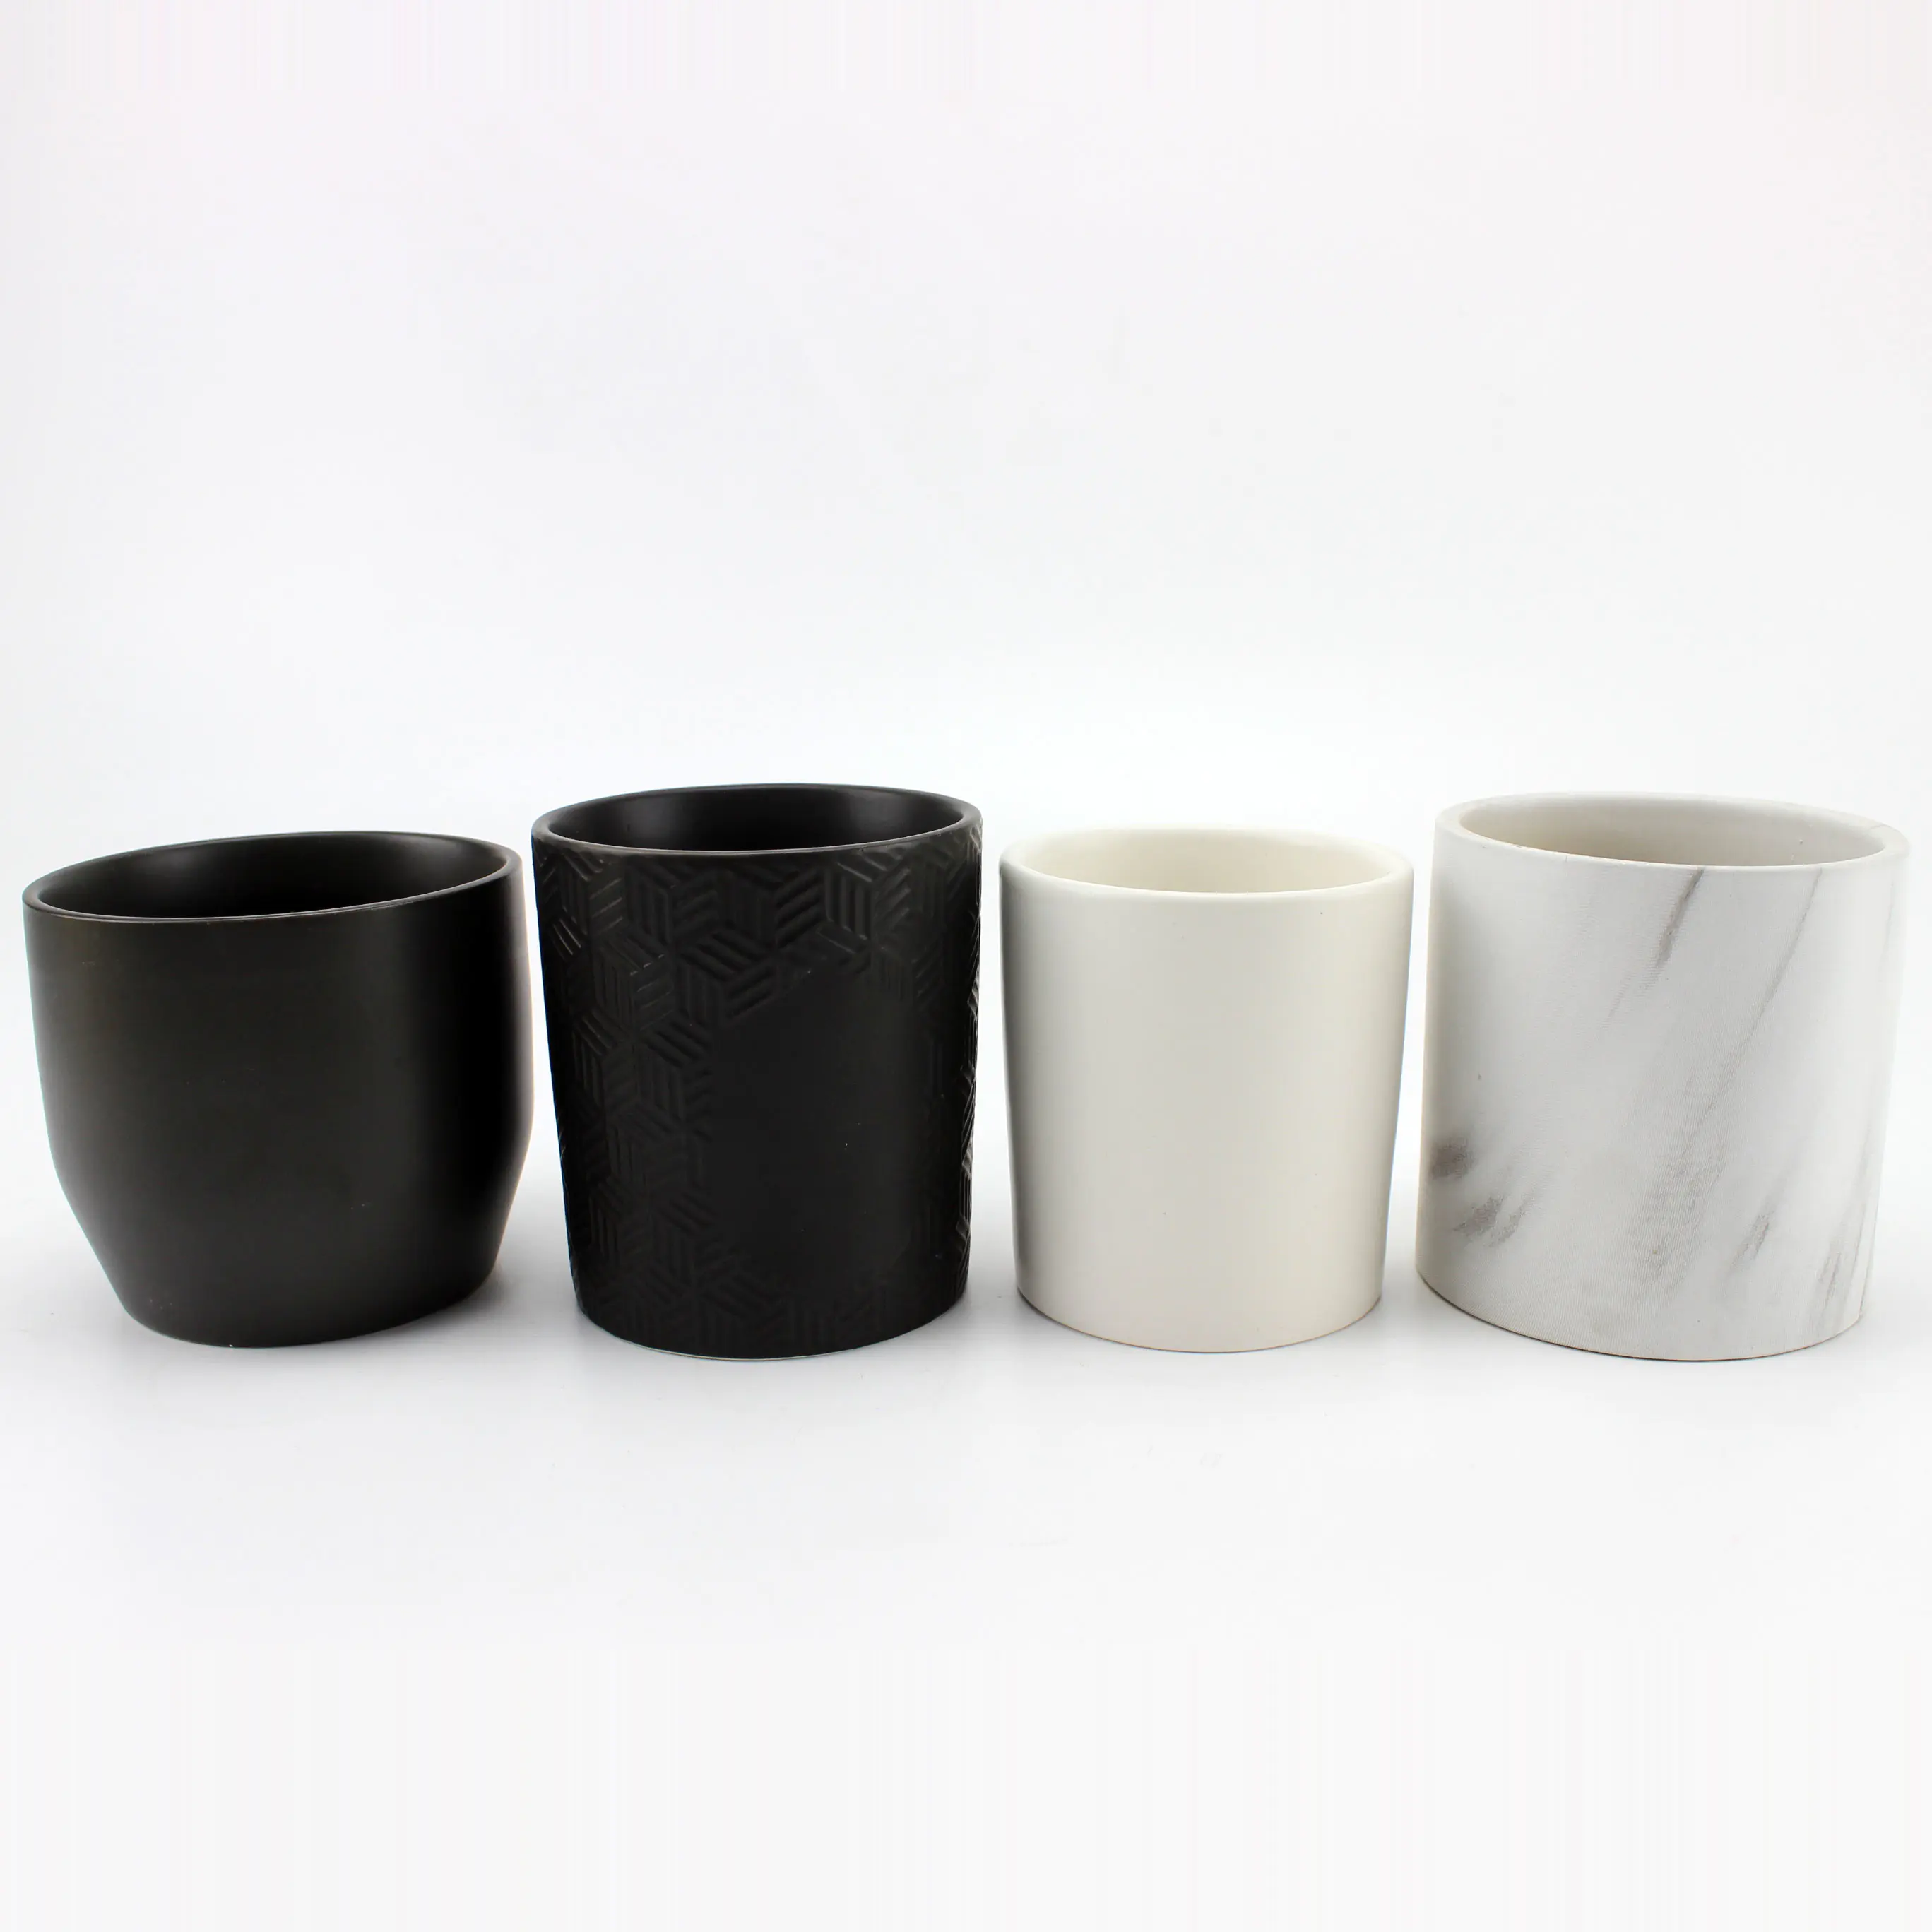 Vente en gros Unique Ceramic Candle Jar Black pour Home Decoratiom